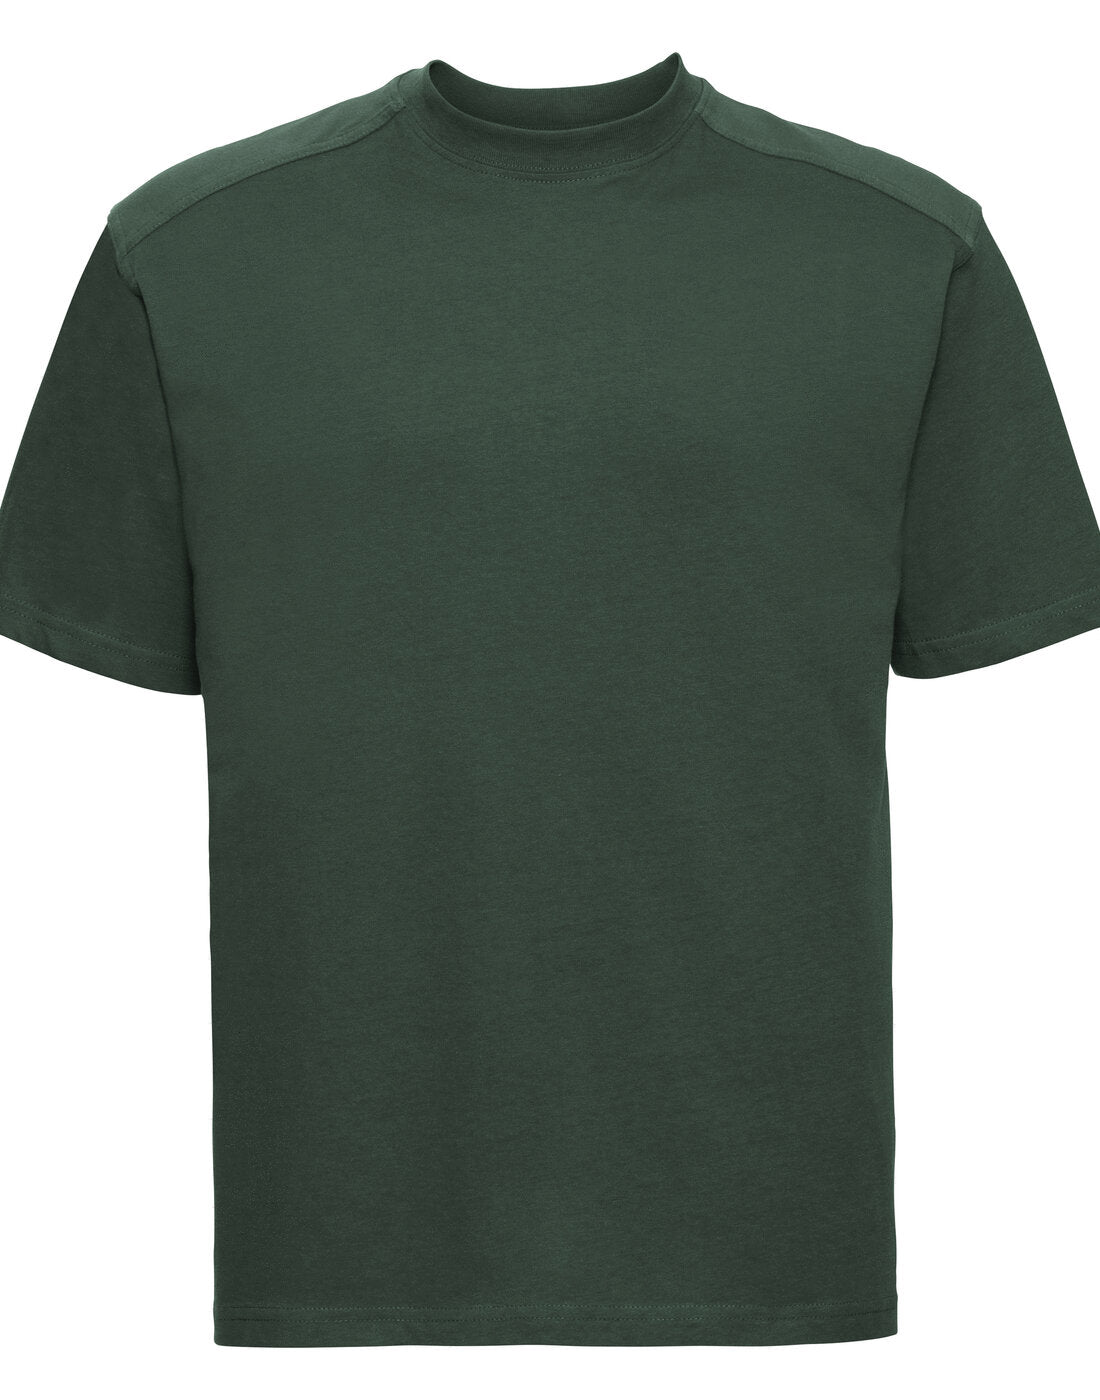 Russell Heavy Duty Workwear T-Shirt - Bottle Green